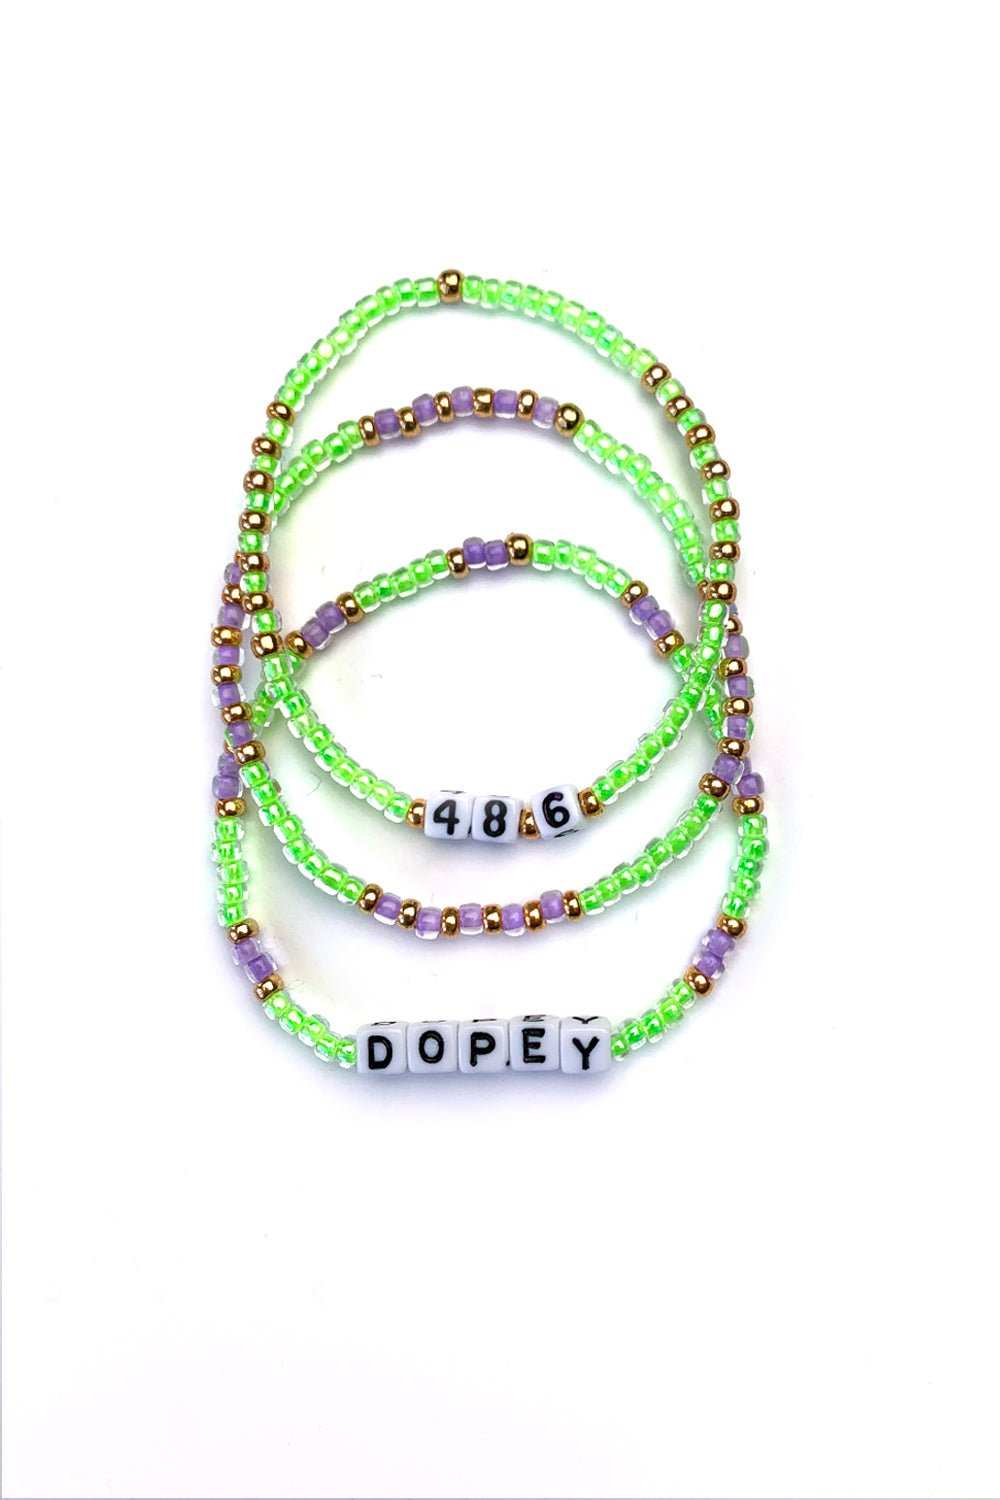 Sarah Marie Design Studio Bracelet 6.25" / Dopey + Stacker + 48.6 Dopey Disney Inspired Bracelet